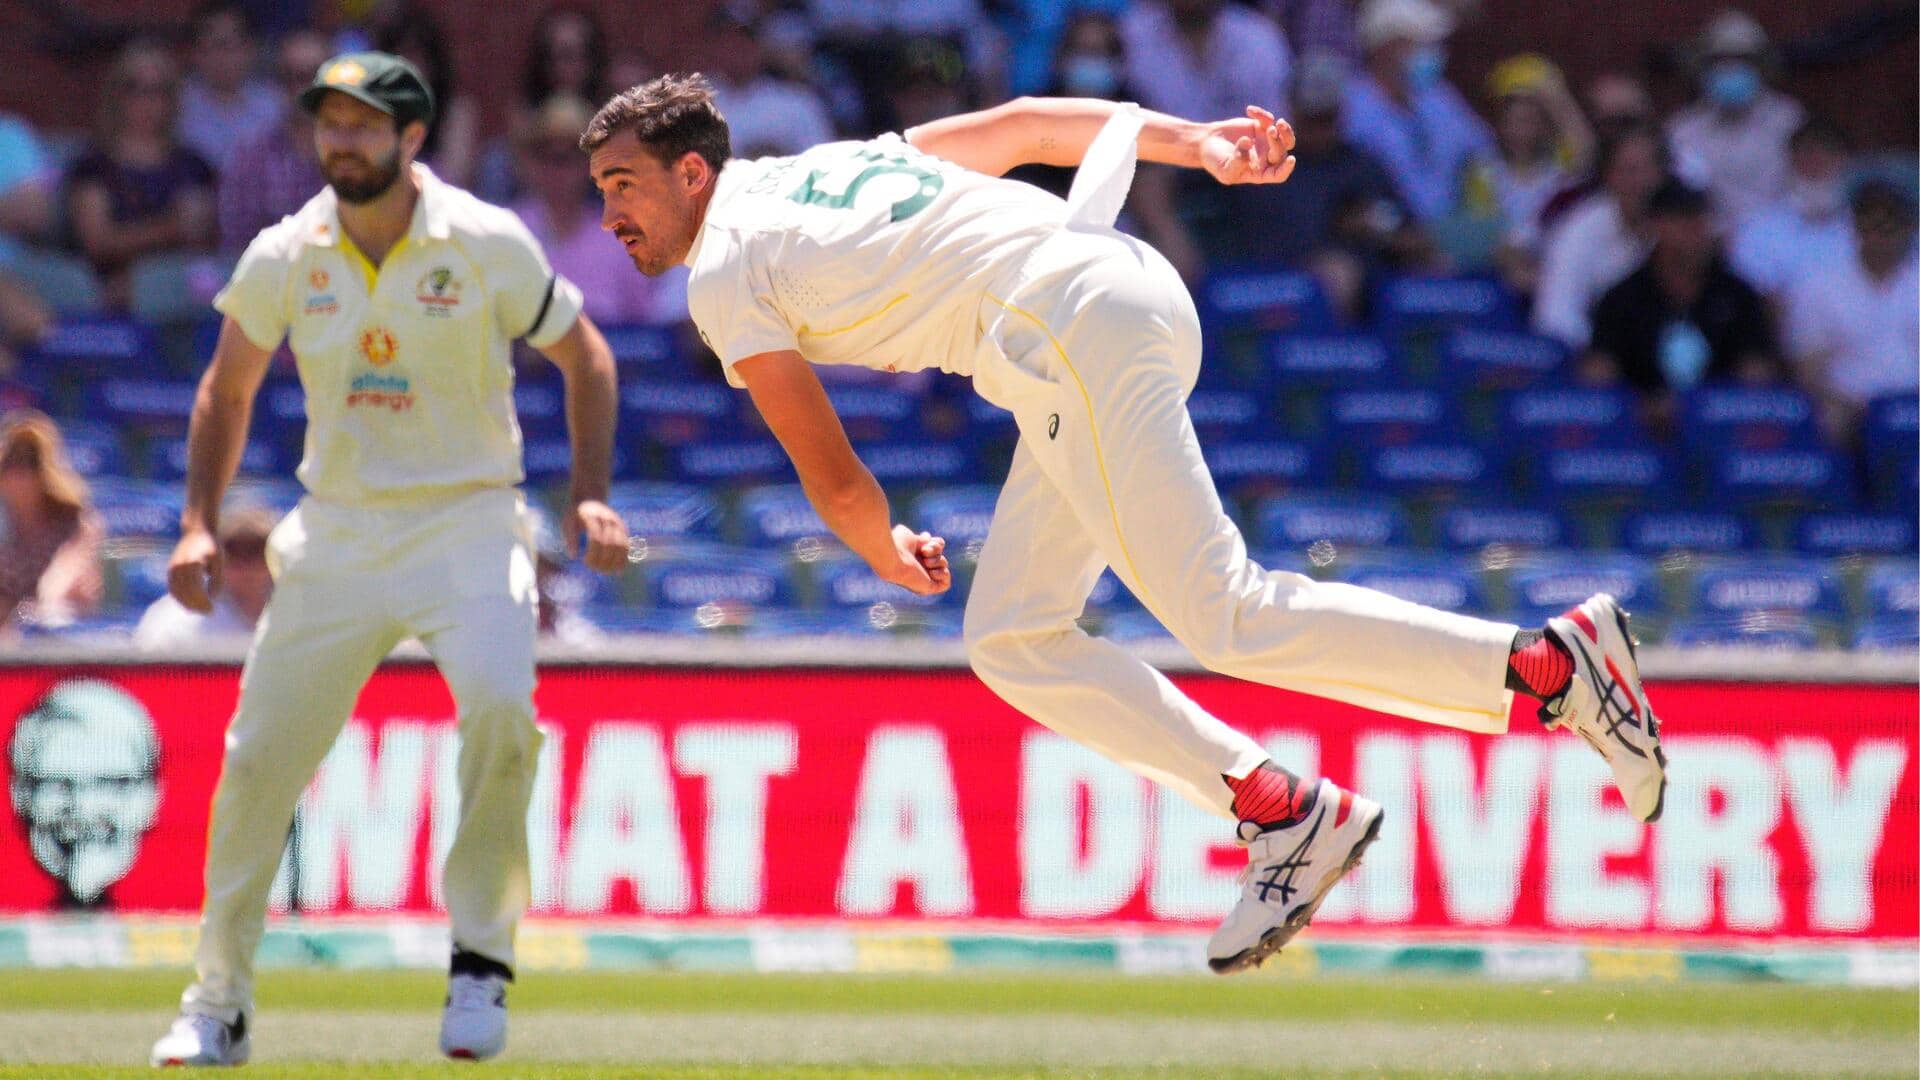 गाबा टेस्ट: मिचेल स्टार्क ने वेस्टइंडीज के खिलाफ झटके 4 विकेट, जानिए आंकड़े